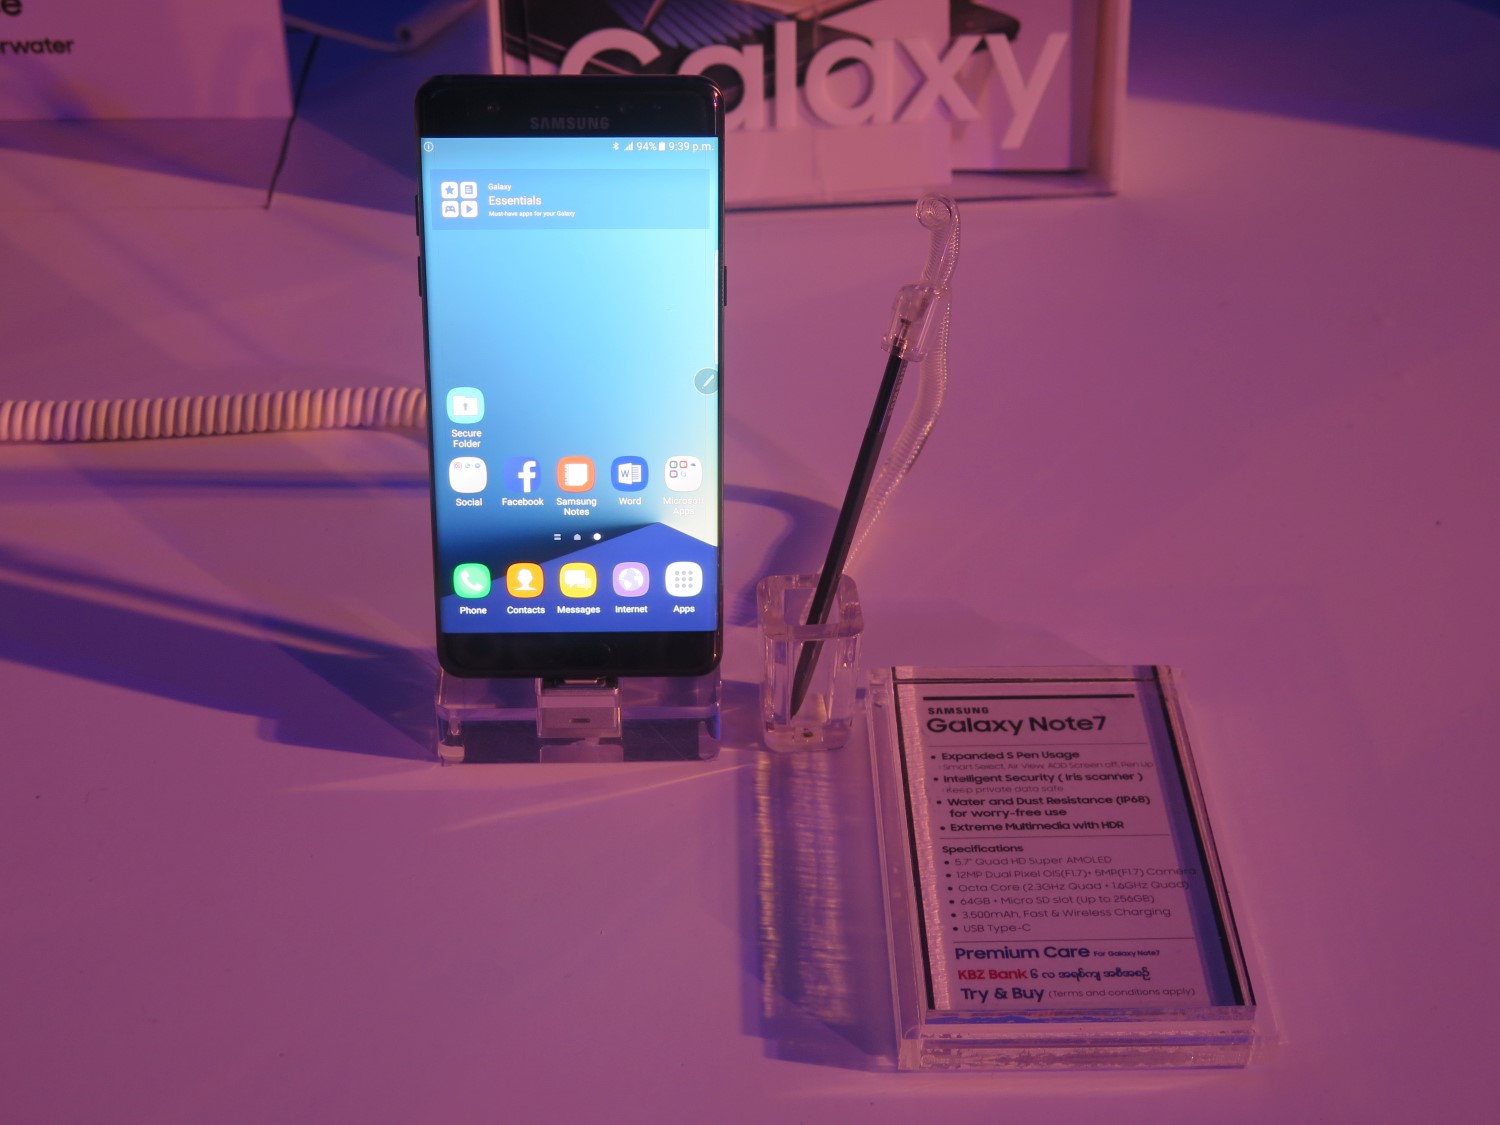  မြန်မာနိုင်ငံမှာ မိတ်ဆက်ခဲ့တဲ့ Galaxy Note 7 